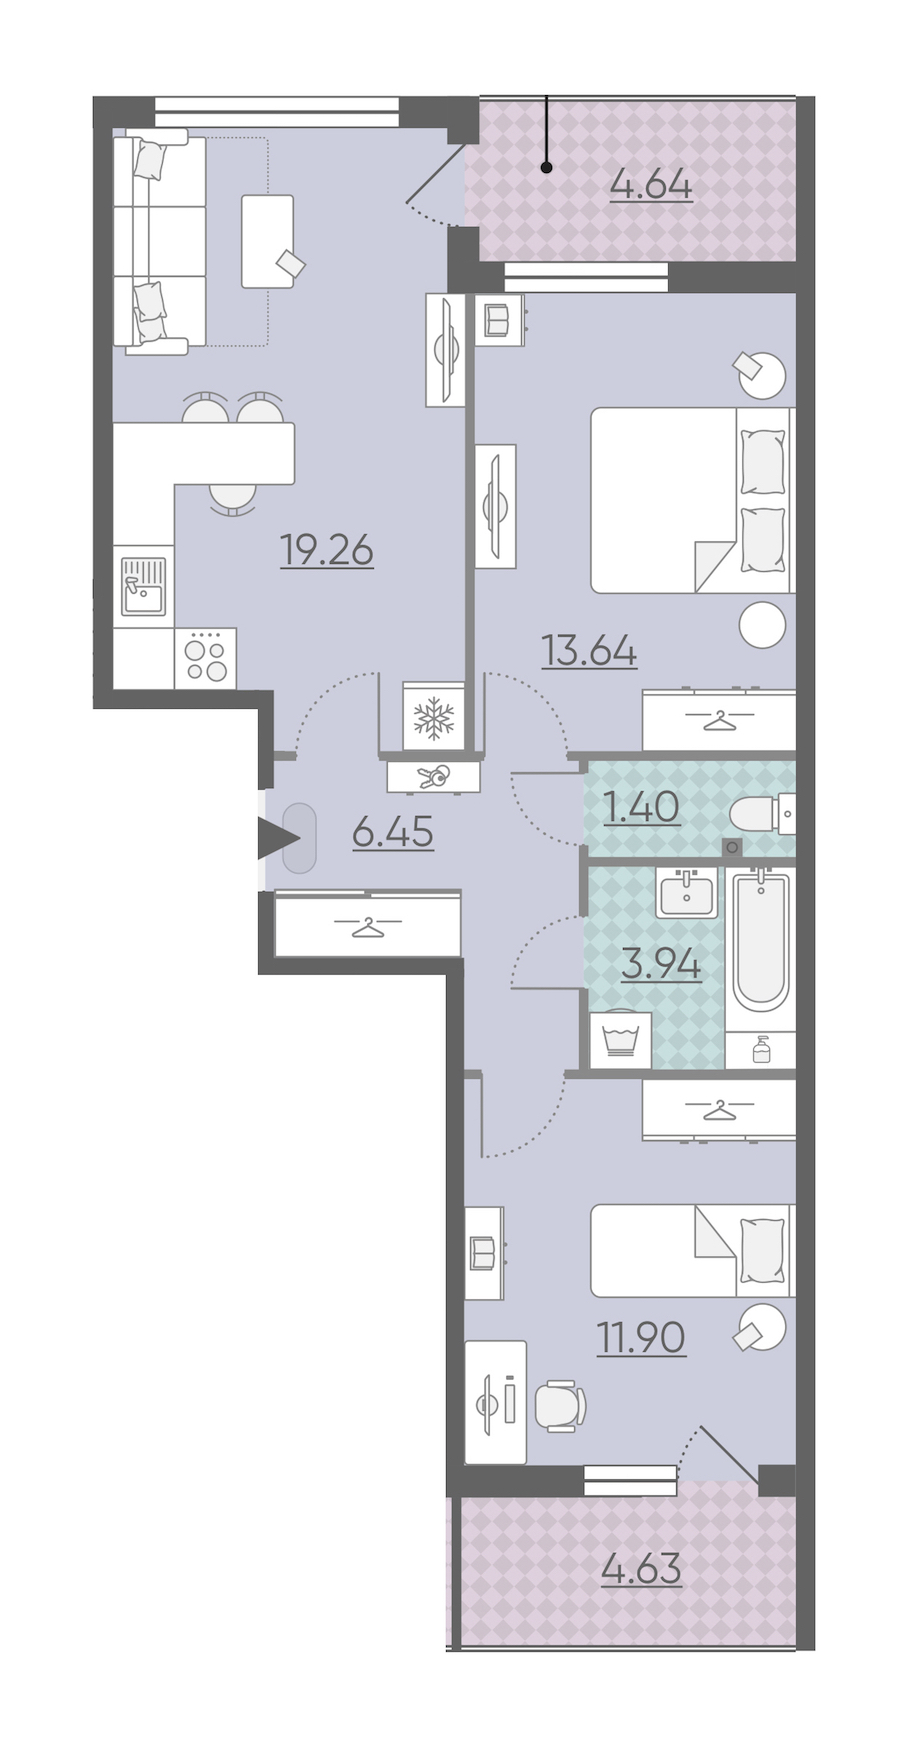 Двухкомнатная квартира в : площадь 61.23 м2 , этаж: 2 – купить в Санкт-Петербурге